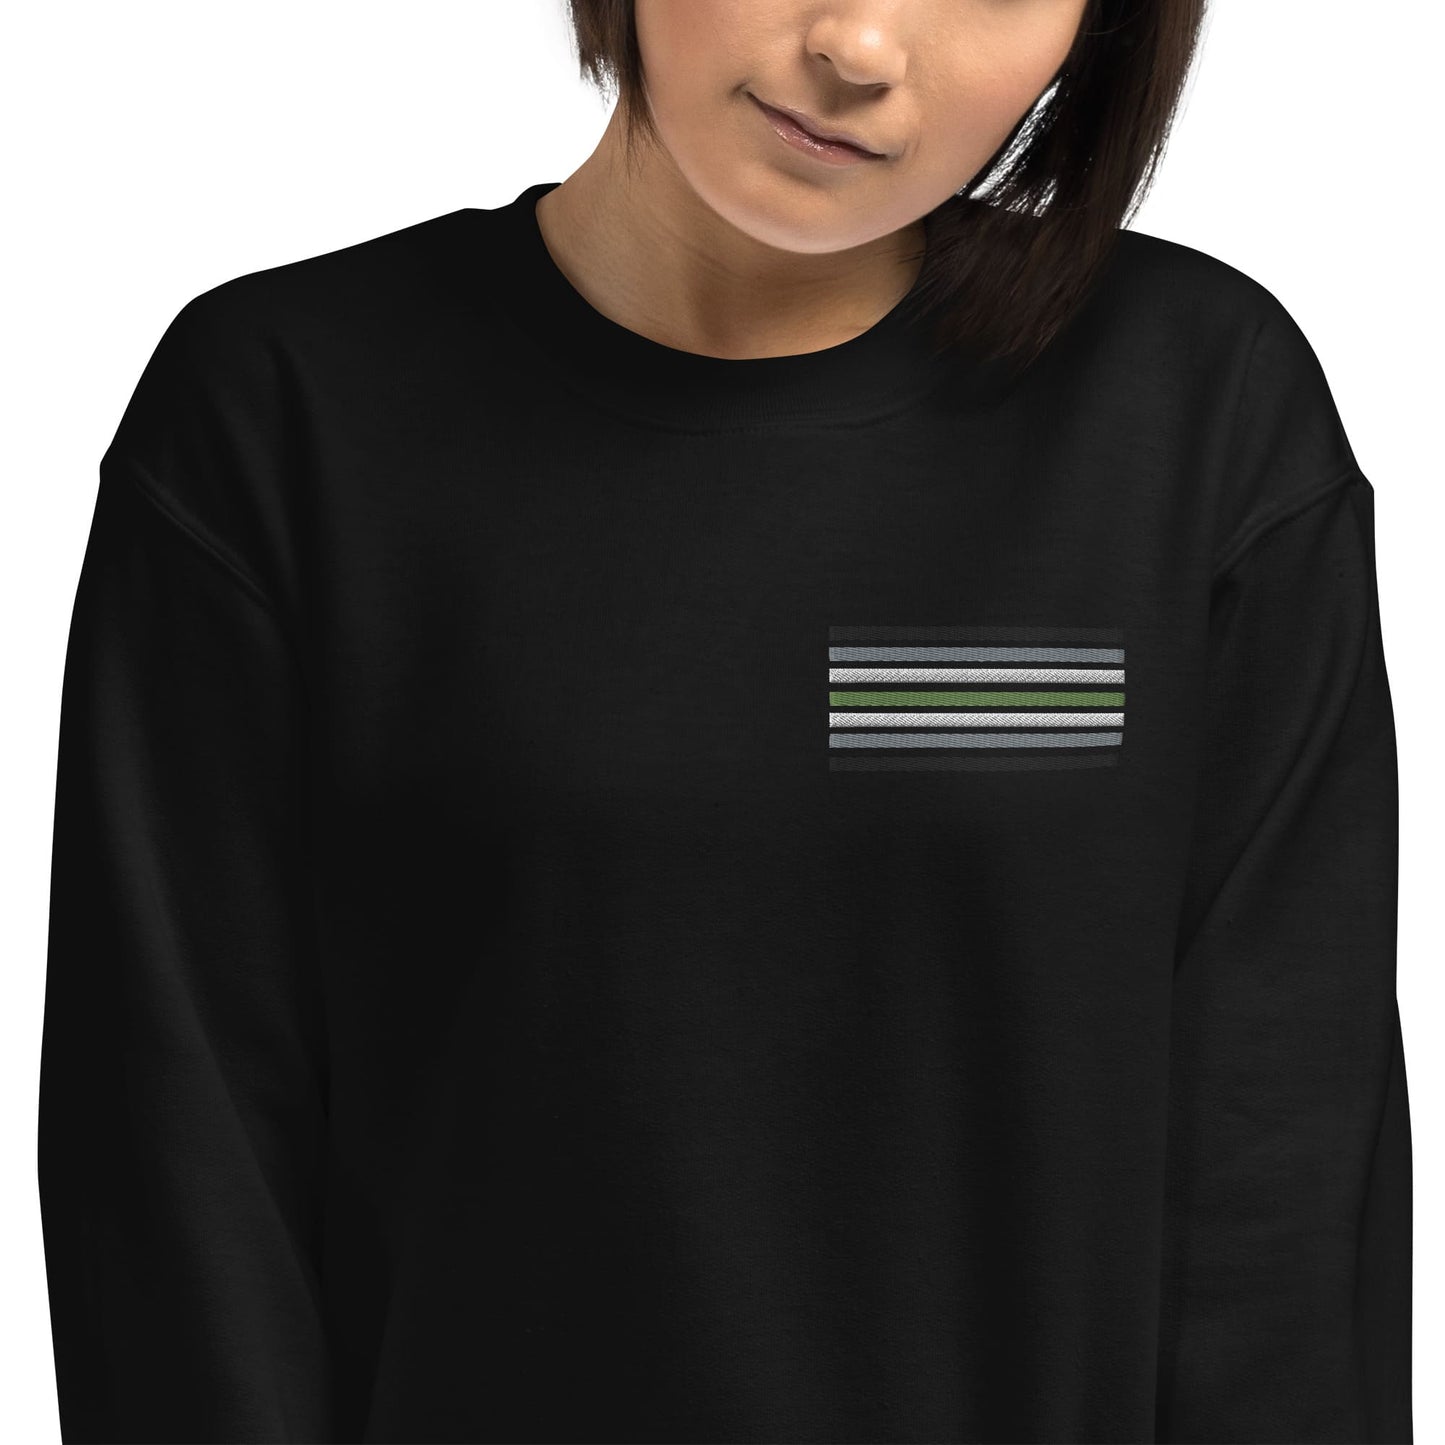 agender sweatshirt, subtle genderless pride flag embroidered pocket design sweater, model 2